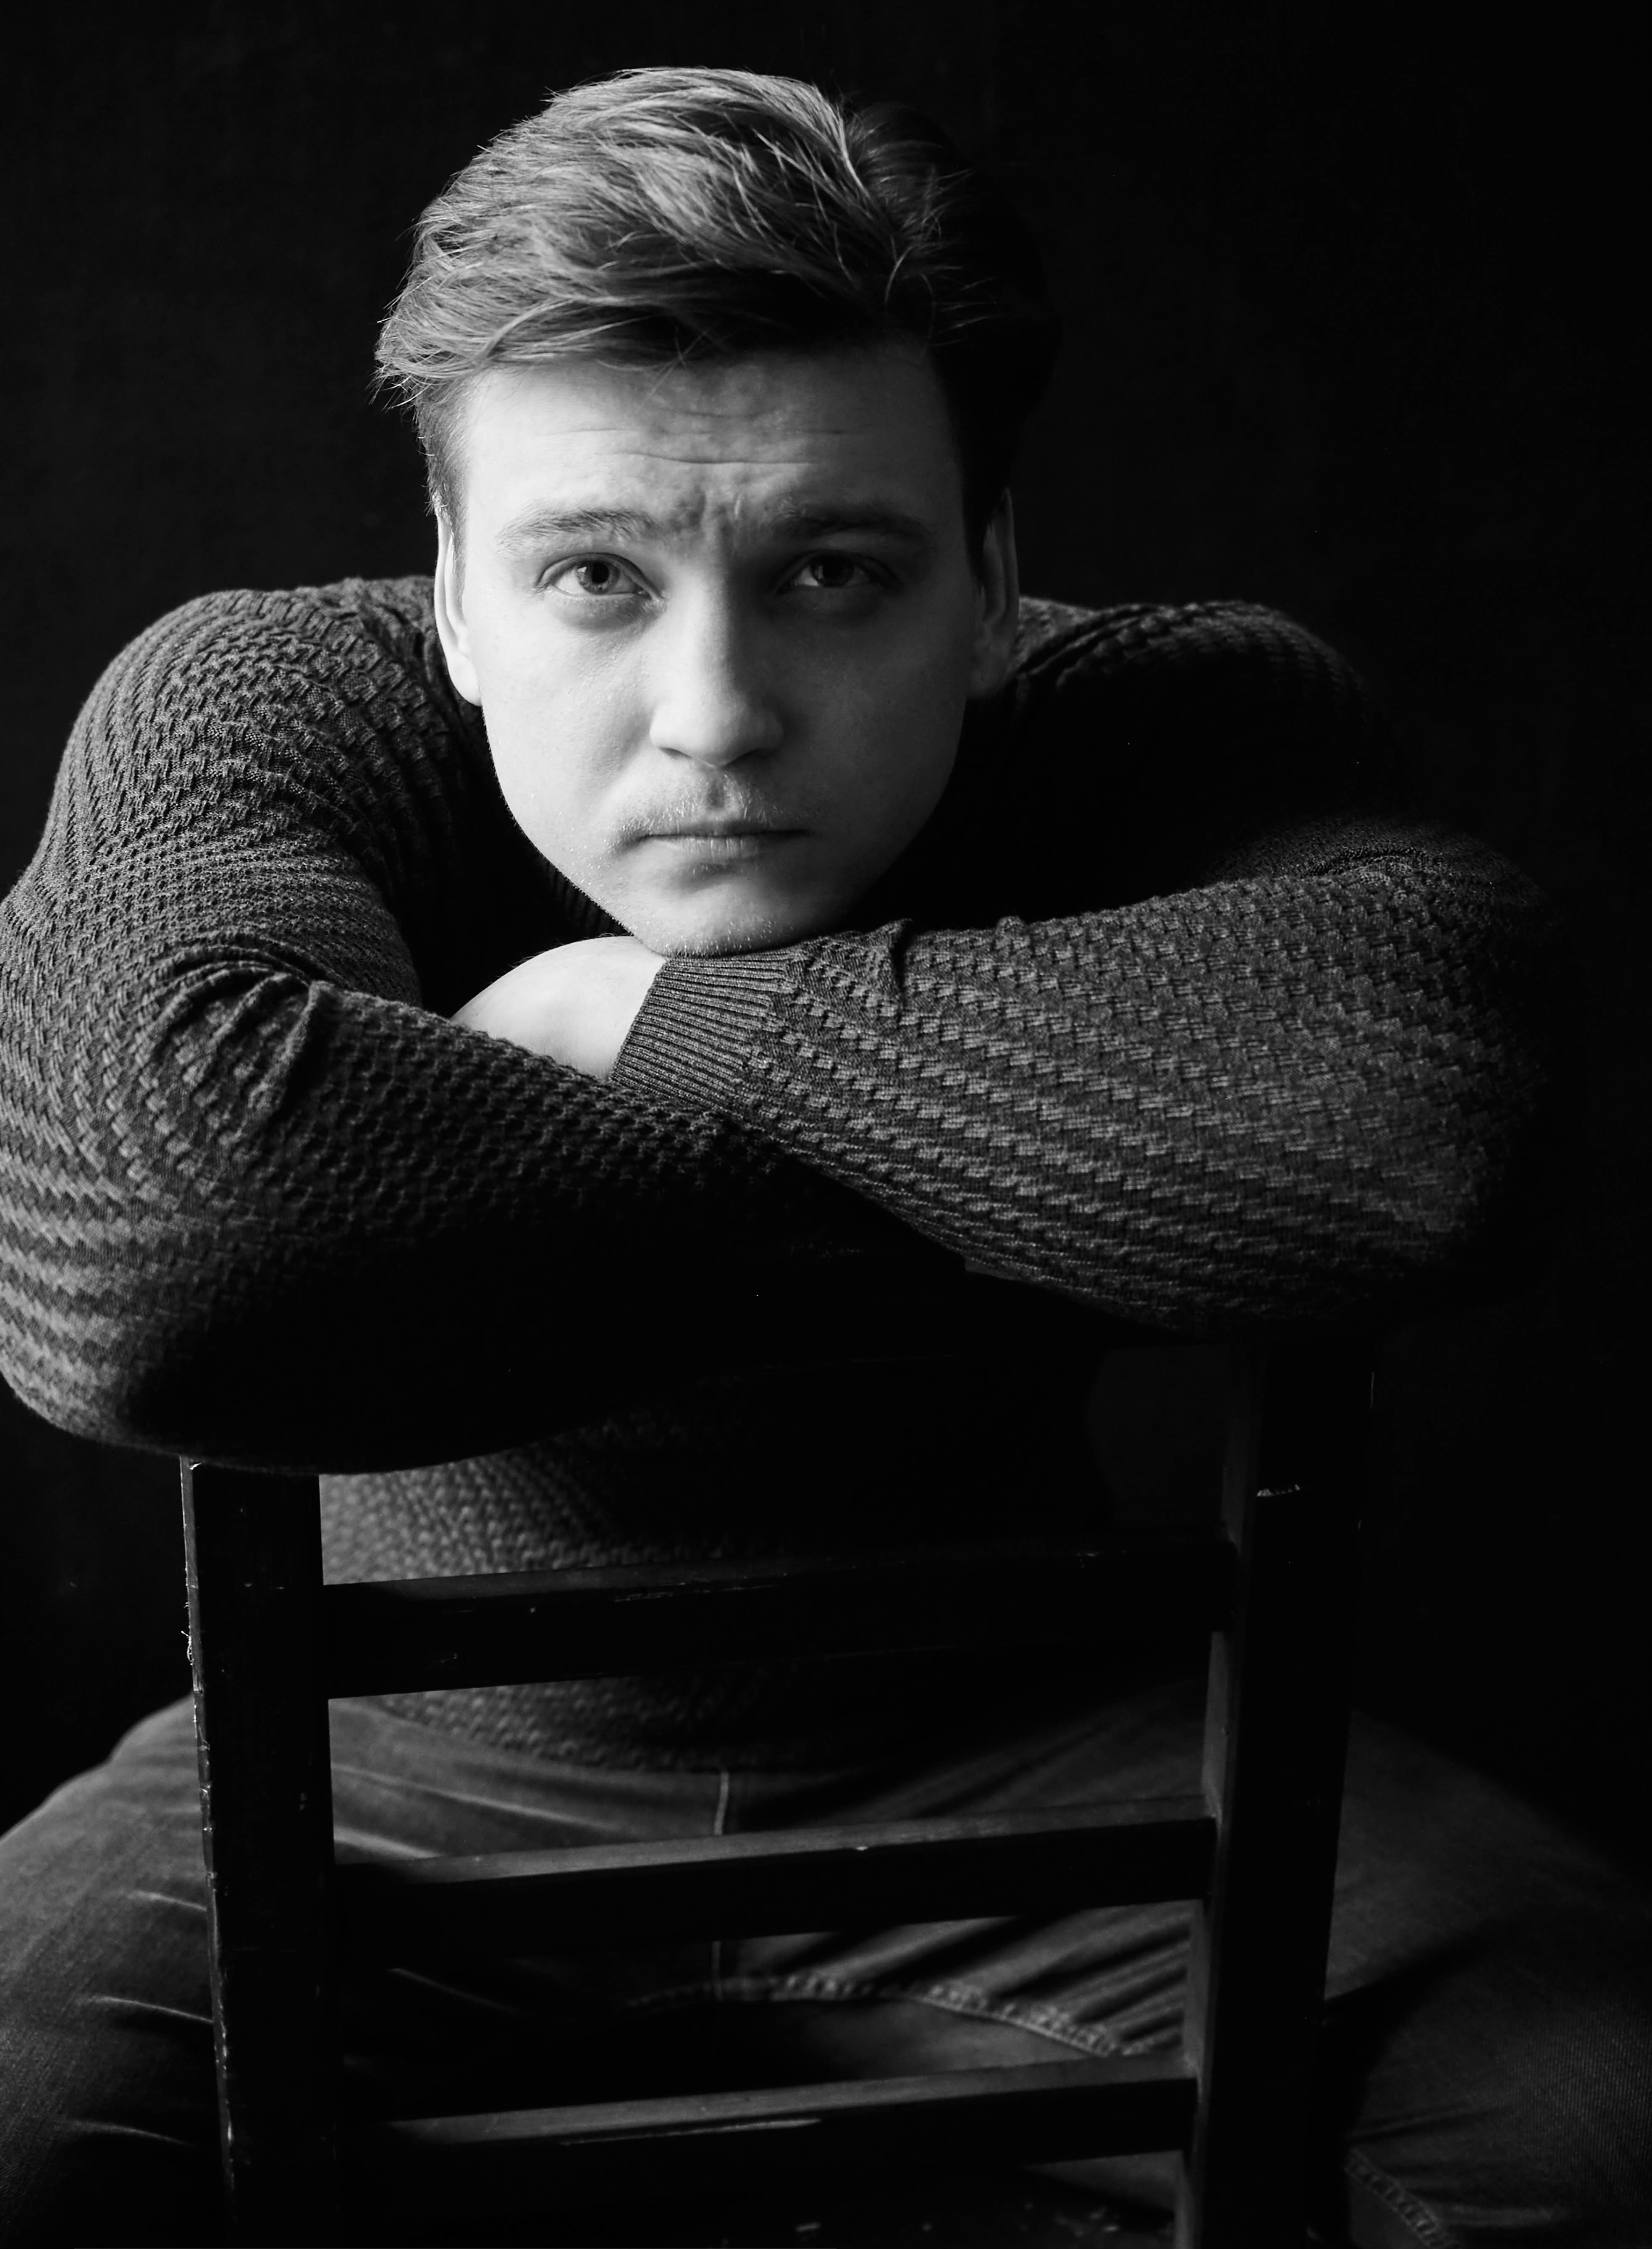 Сергей Грищенко